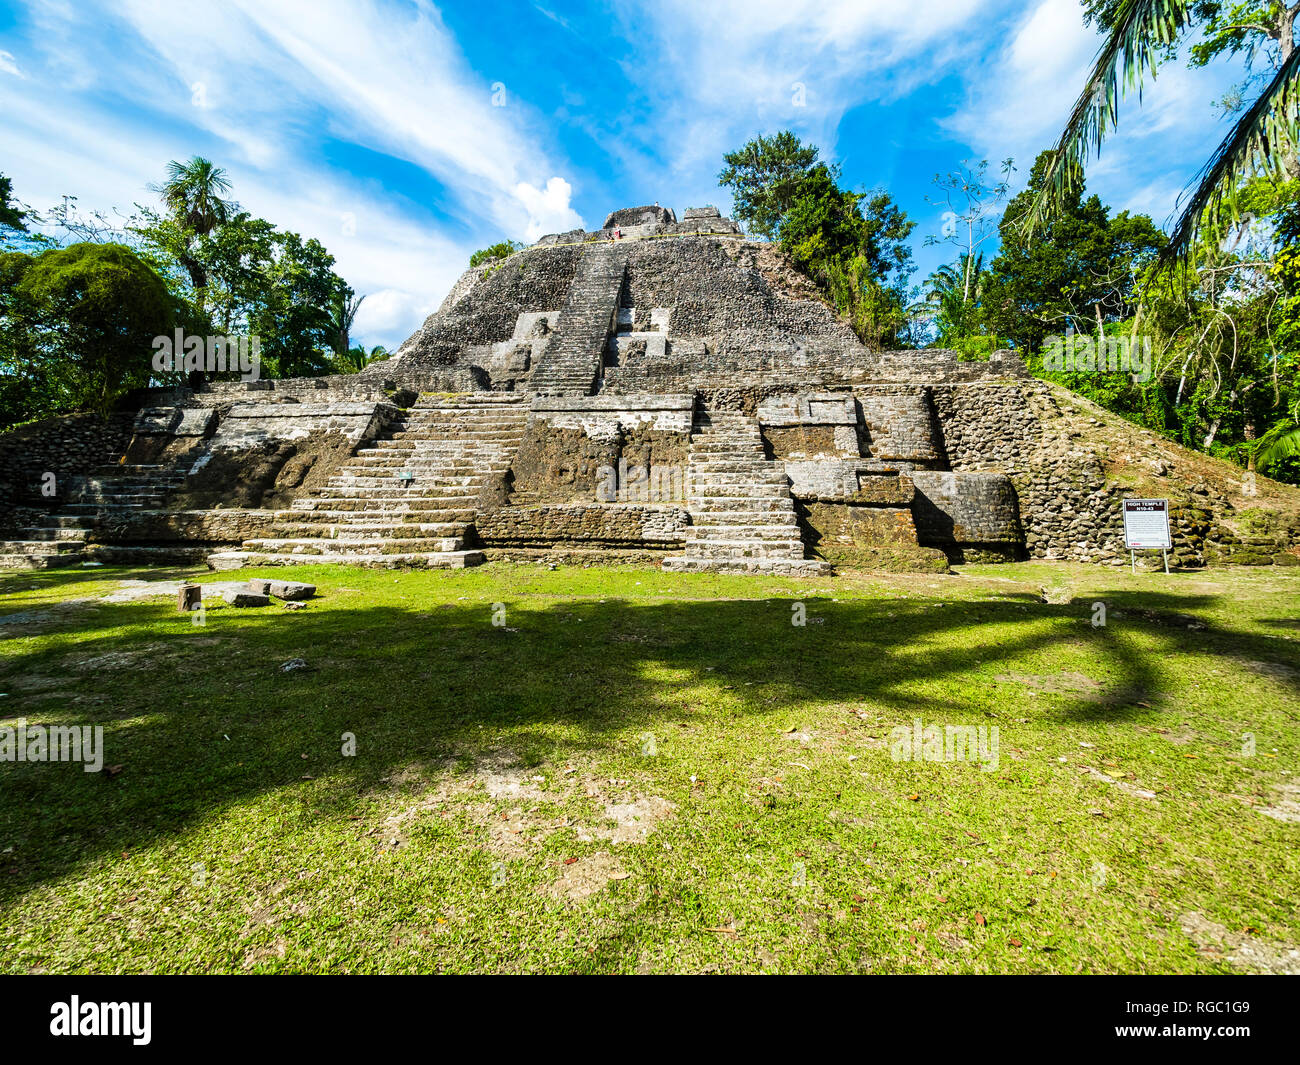 America centrale, il Belize, la penisola dello Yucatan, New River, Lamanai, Maya rovina, tempio alta Foto Stock